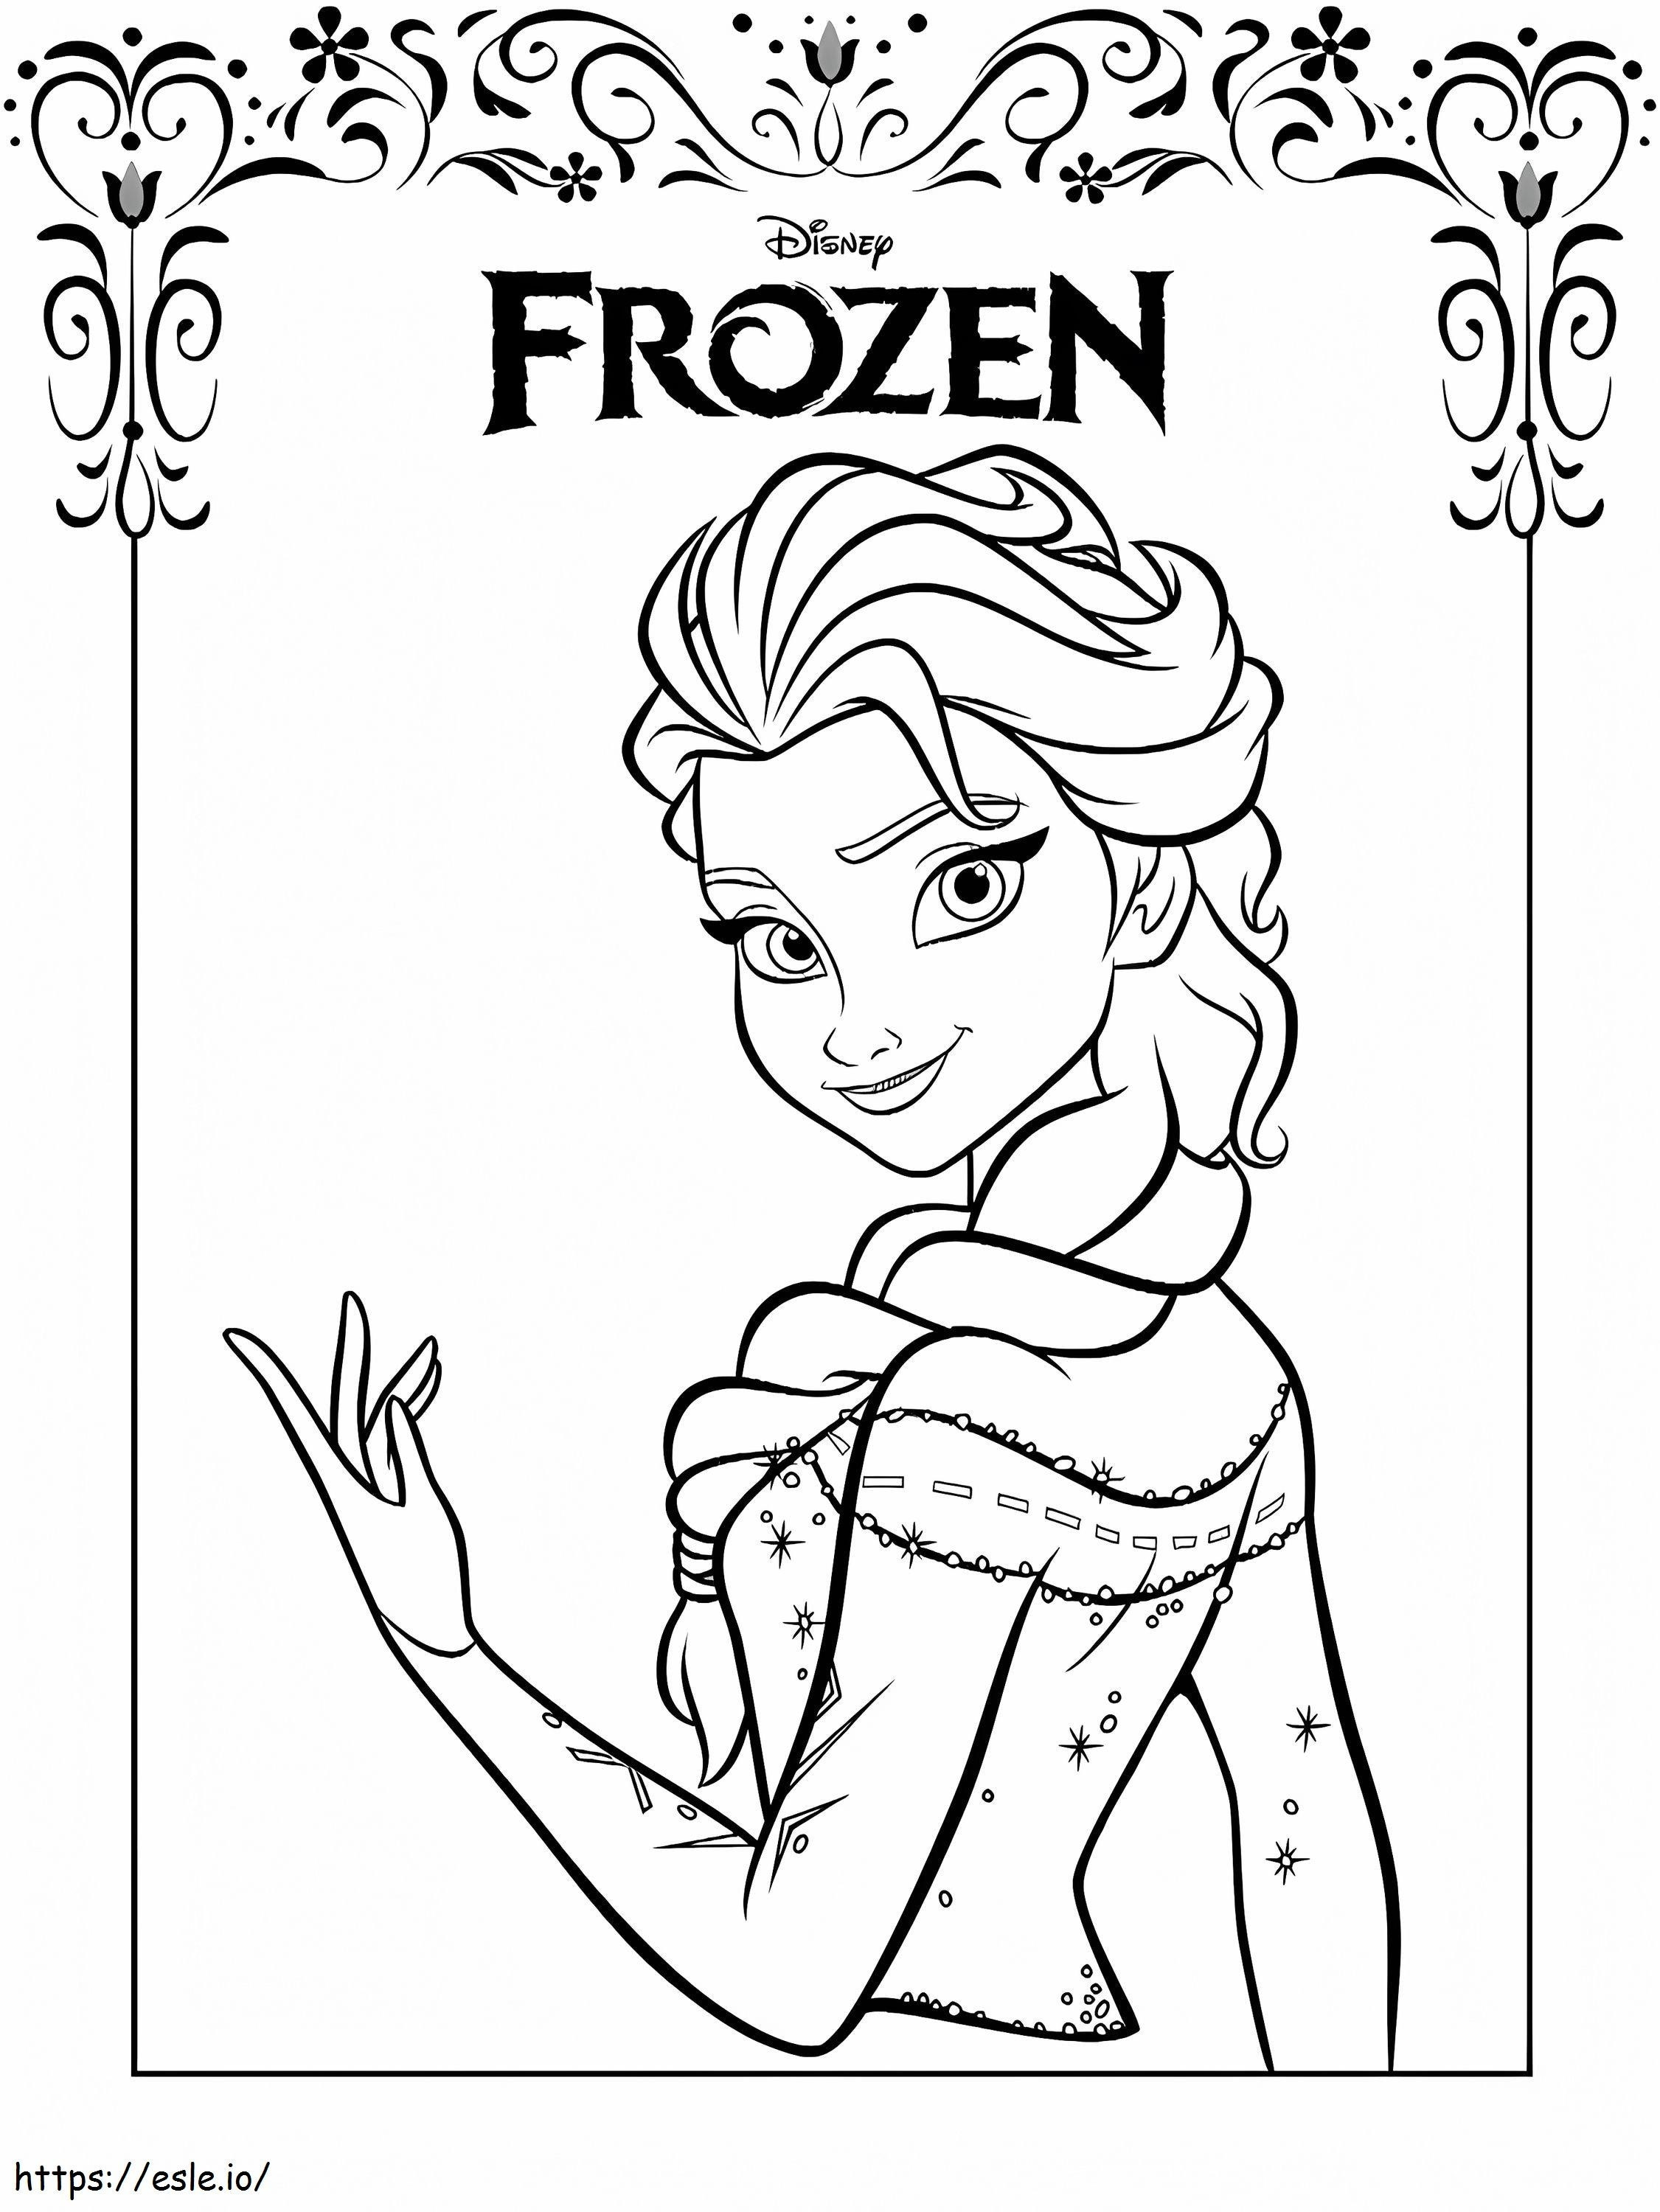 Elsa del film Frozen da colorare